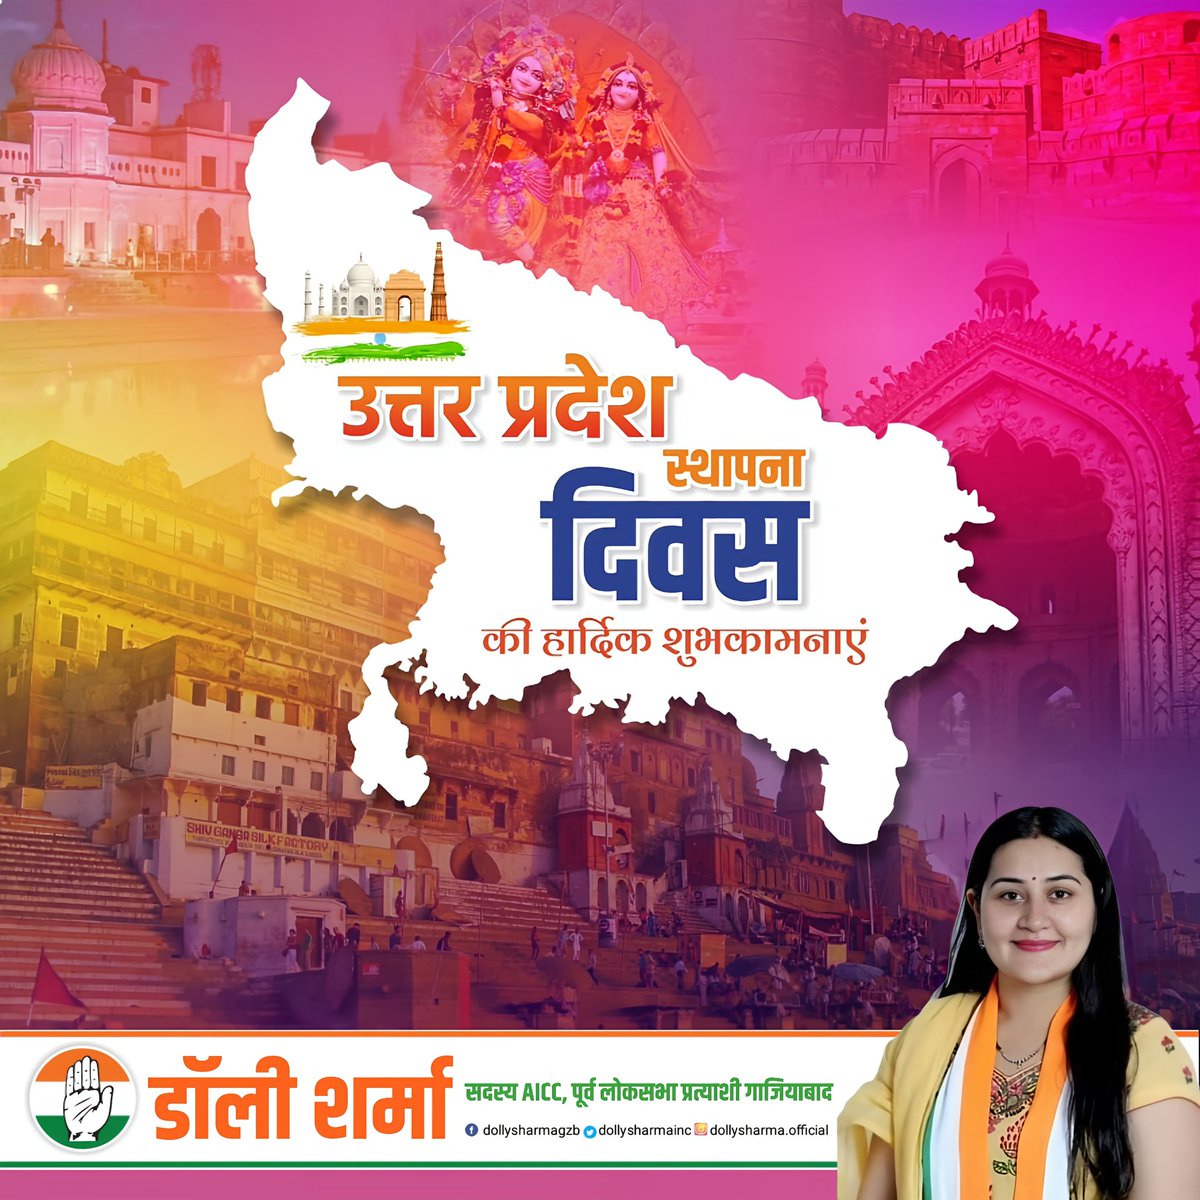 उत्तर प्रदेश स्थापना दिवस की शुभकामनाएं।  #UttarPradeshDivas